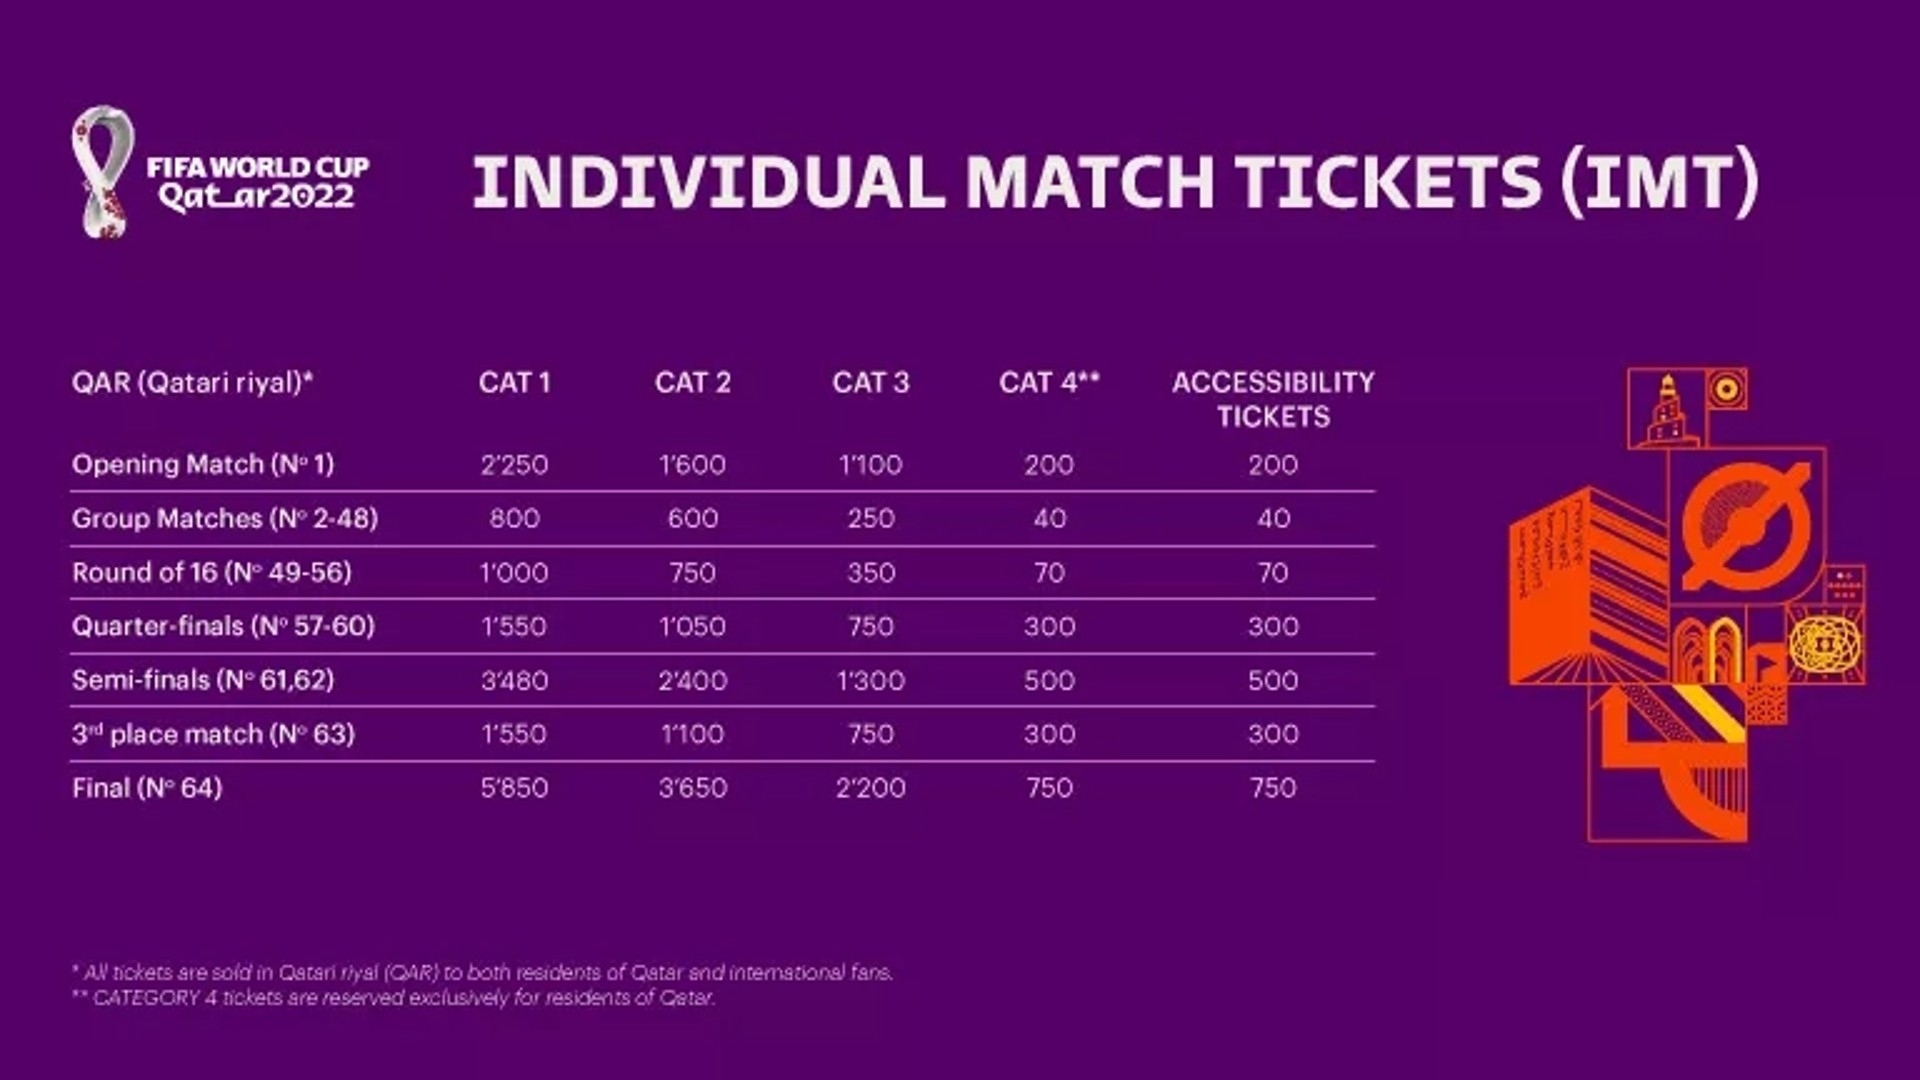 Giá vé World Cup 2022 chung kết lên tới 1.607 USD